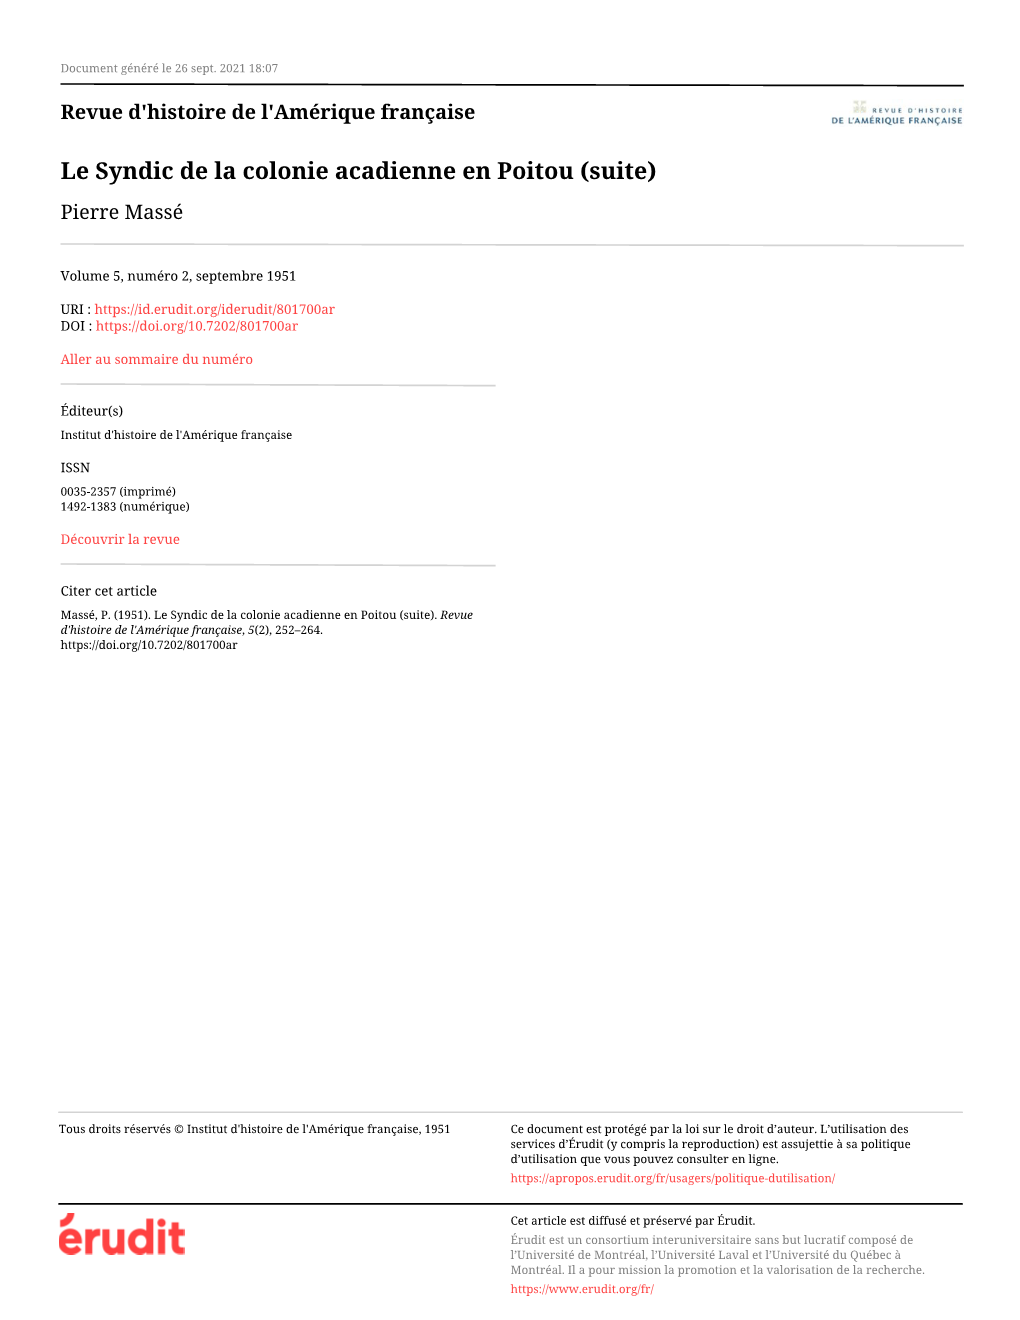 Le Syndic De La Colonie Acadienne En Poitou (Suite) Pierre Massé